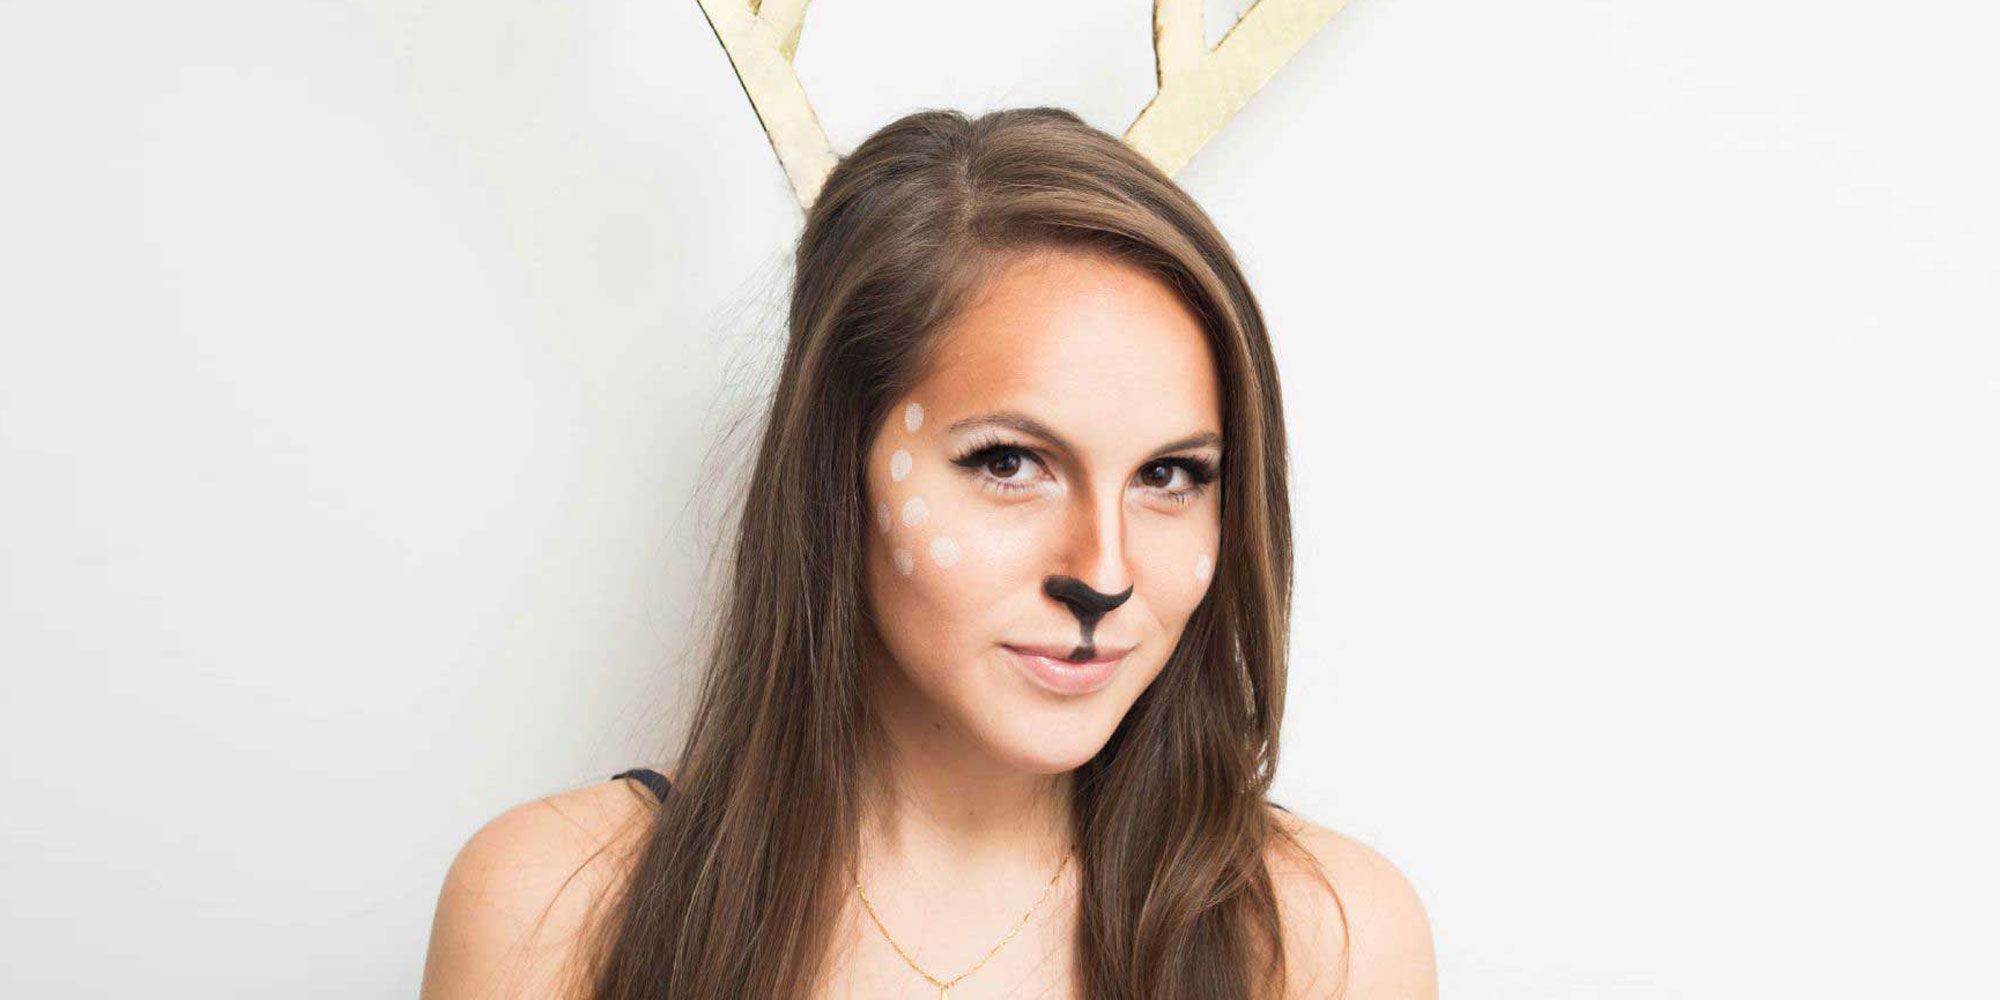 Easy Deer Makeup Tutorial for 2020 - Idea